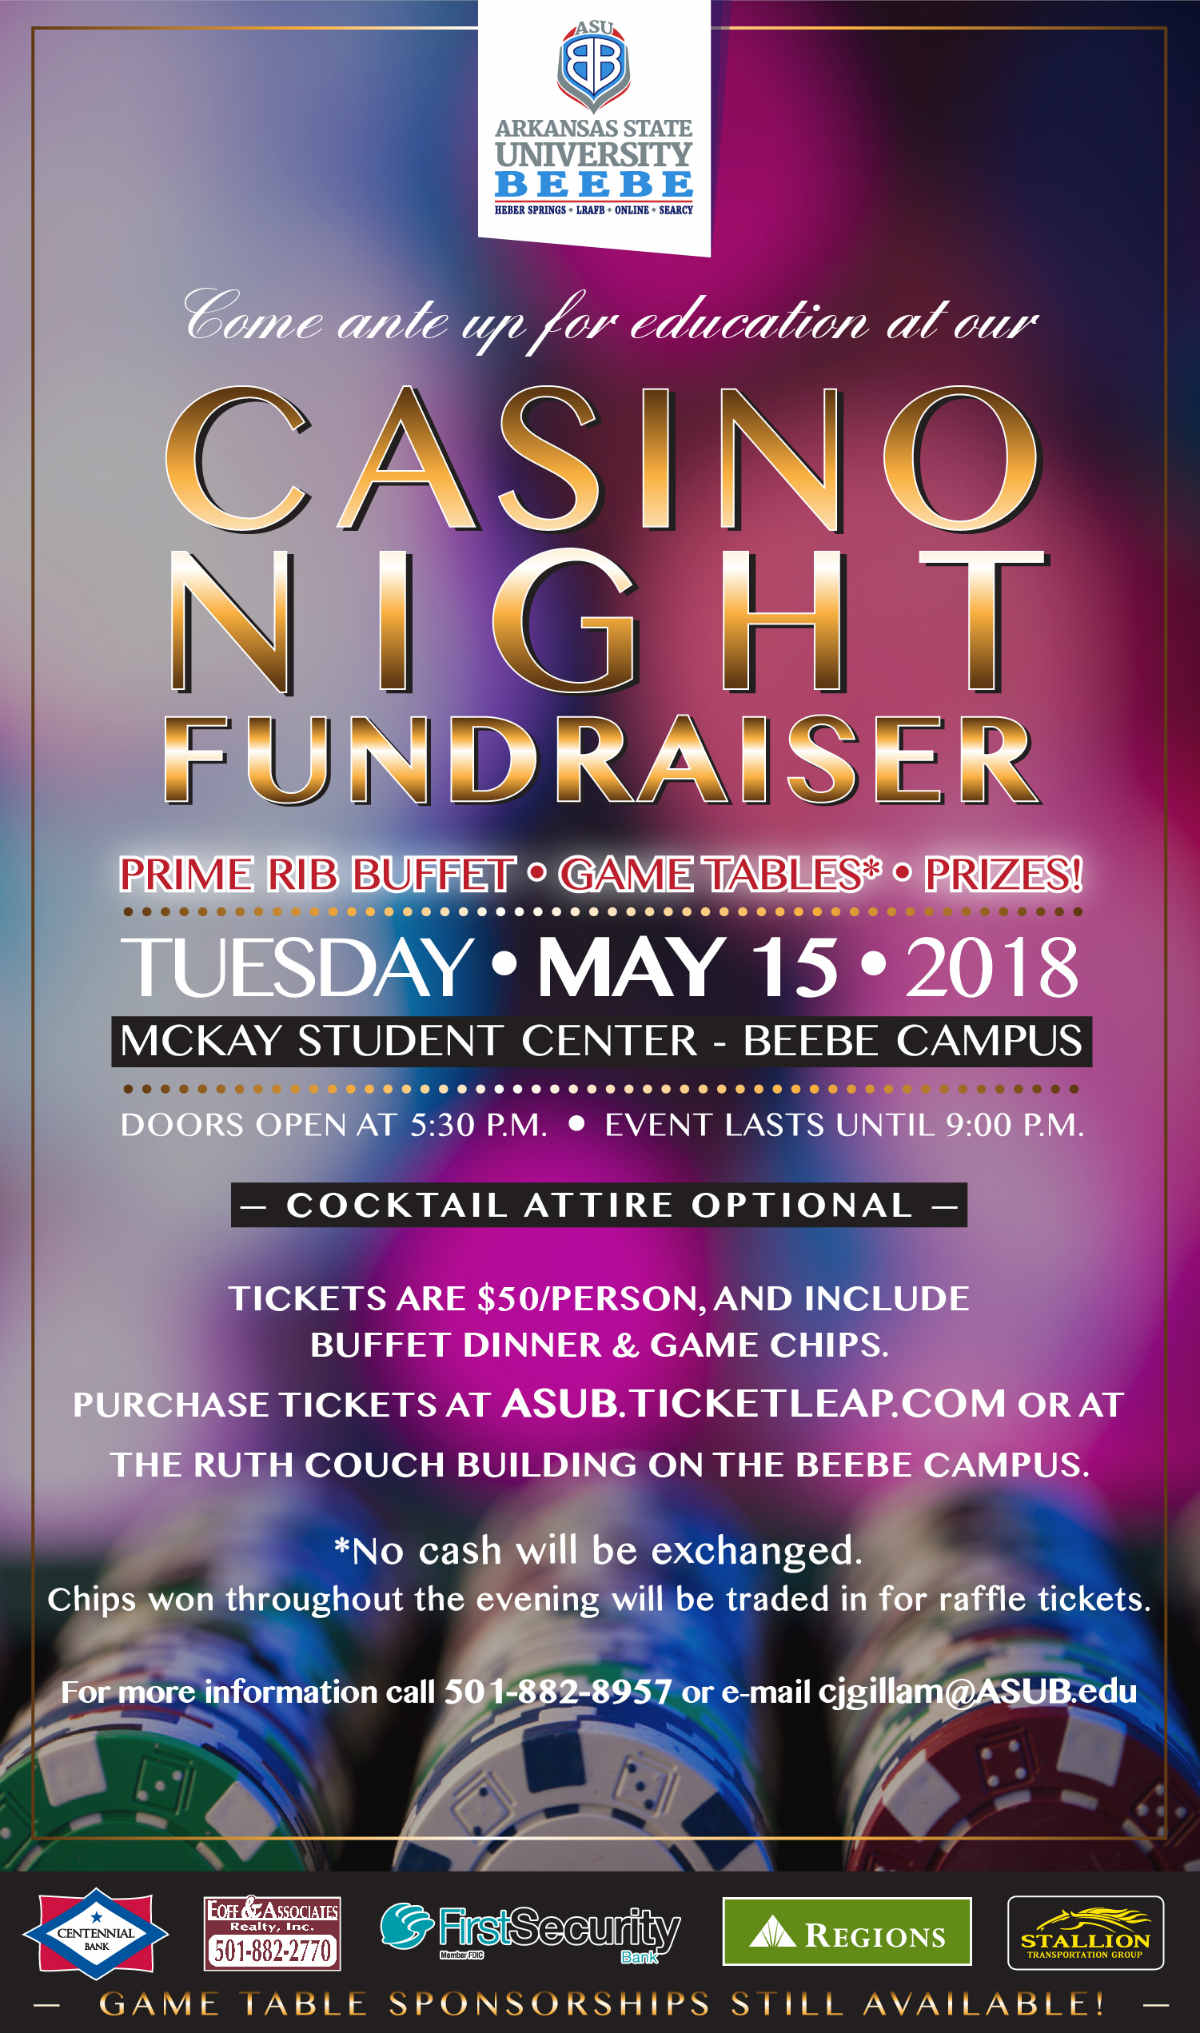 ASU-Beebe Casino Night Fundraiser